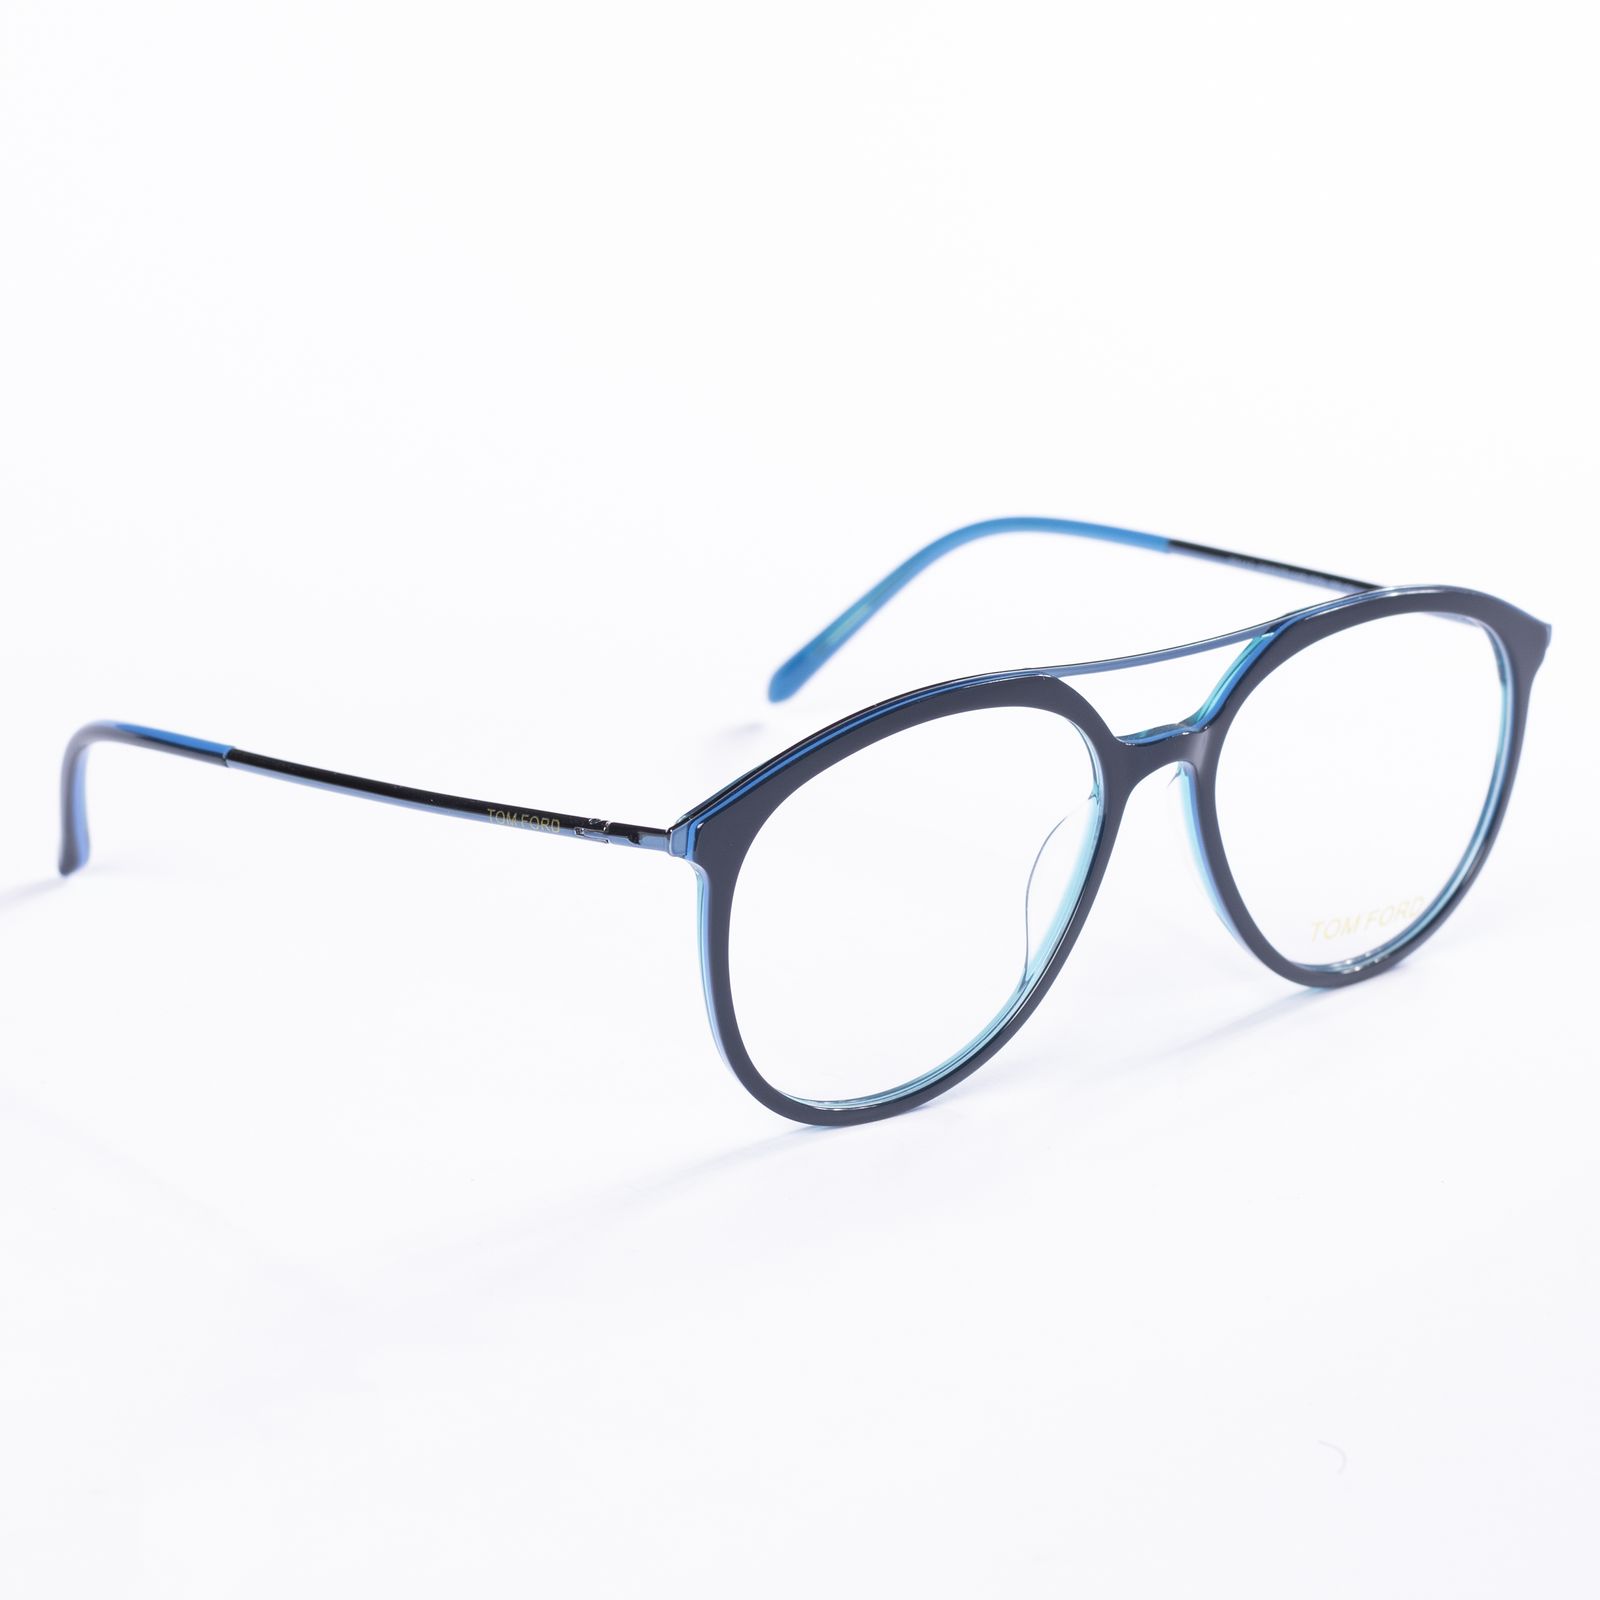 فریم عینک طبی مدل 20115 -  - 2